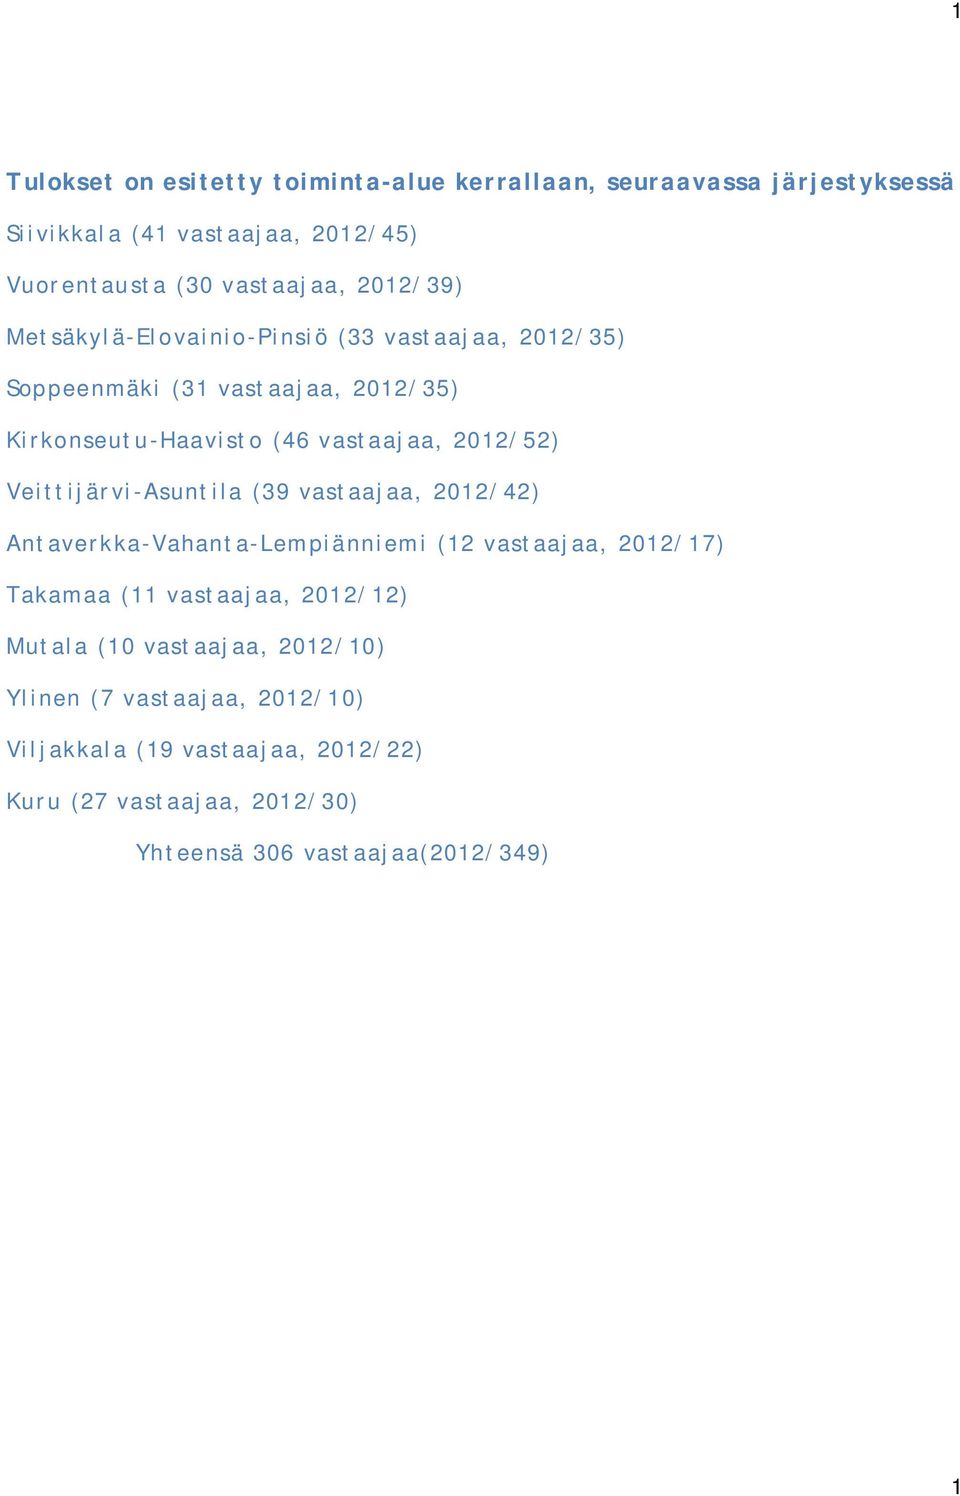 Veittijärvi-Asuntila (39 vastaajaa, 2012/42) Antaverkka-Vahanta-Lempiänniemi (12 vastaajaa, 2012/17) Takamaa (11 vastaajaa, 2012/12) Mutala